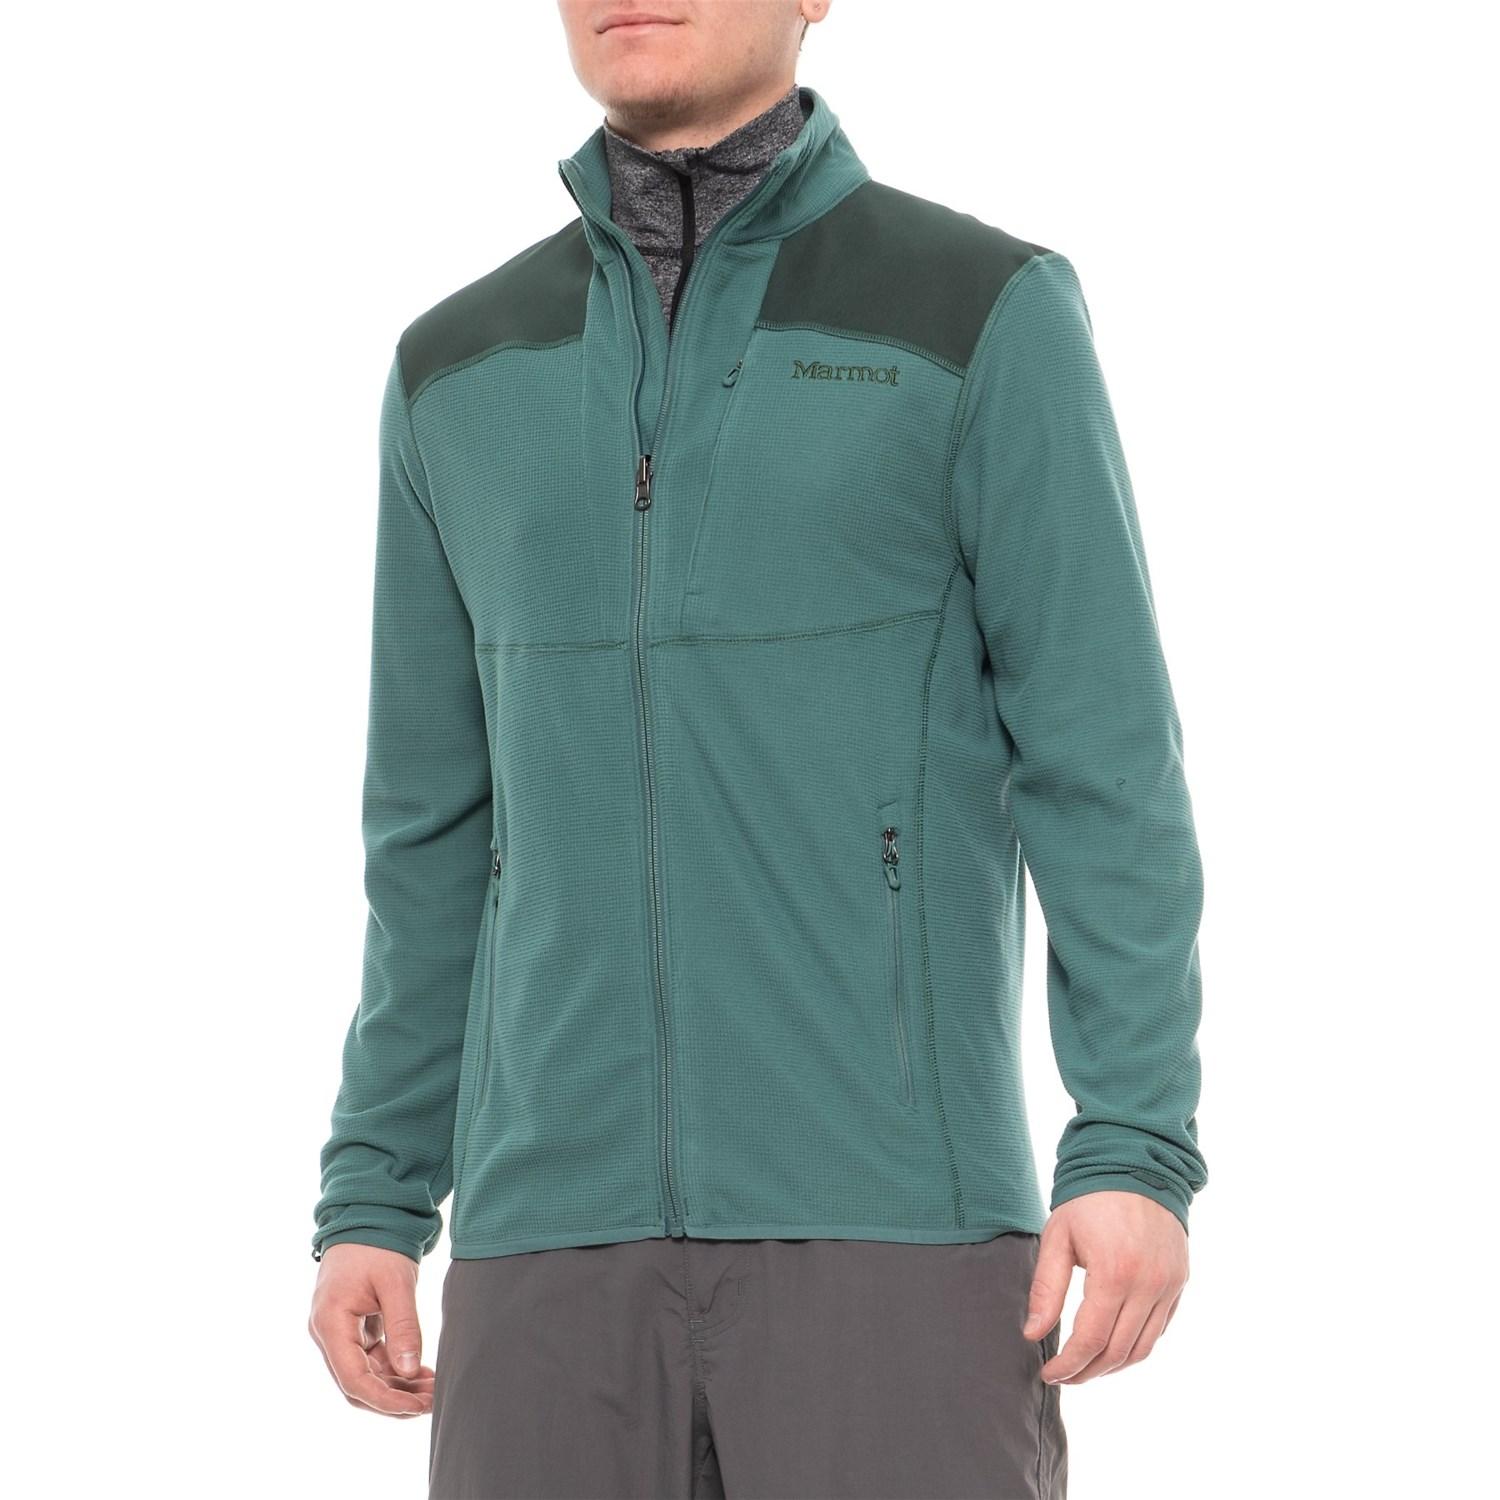 Marmot Reactor Polartec(r) Power Grid Fleece Jacket in Green for Men - Lyst